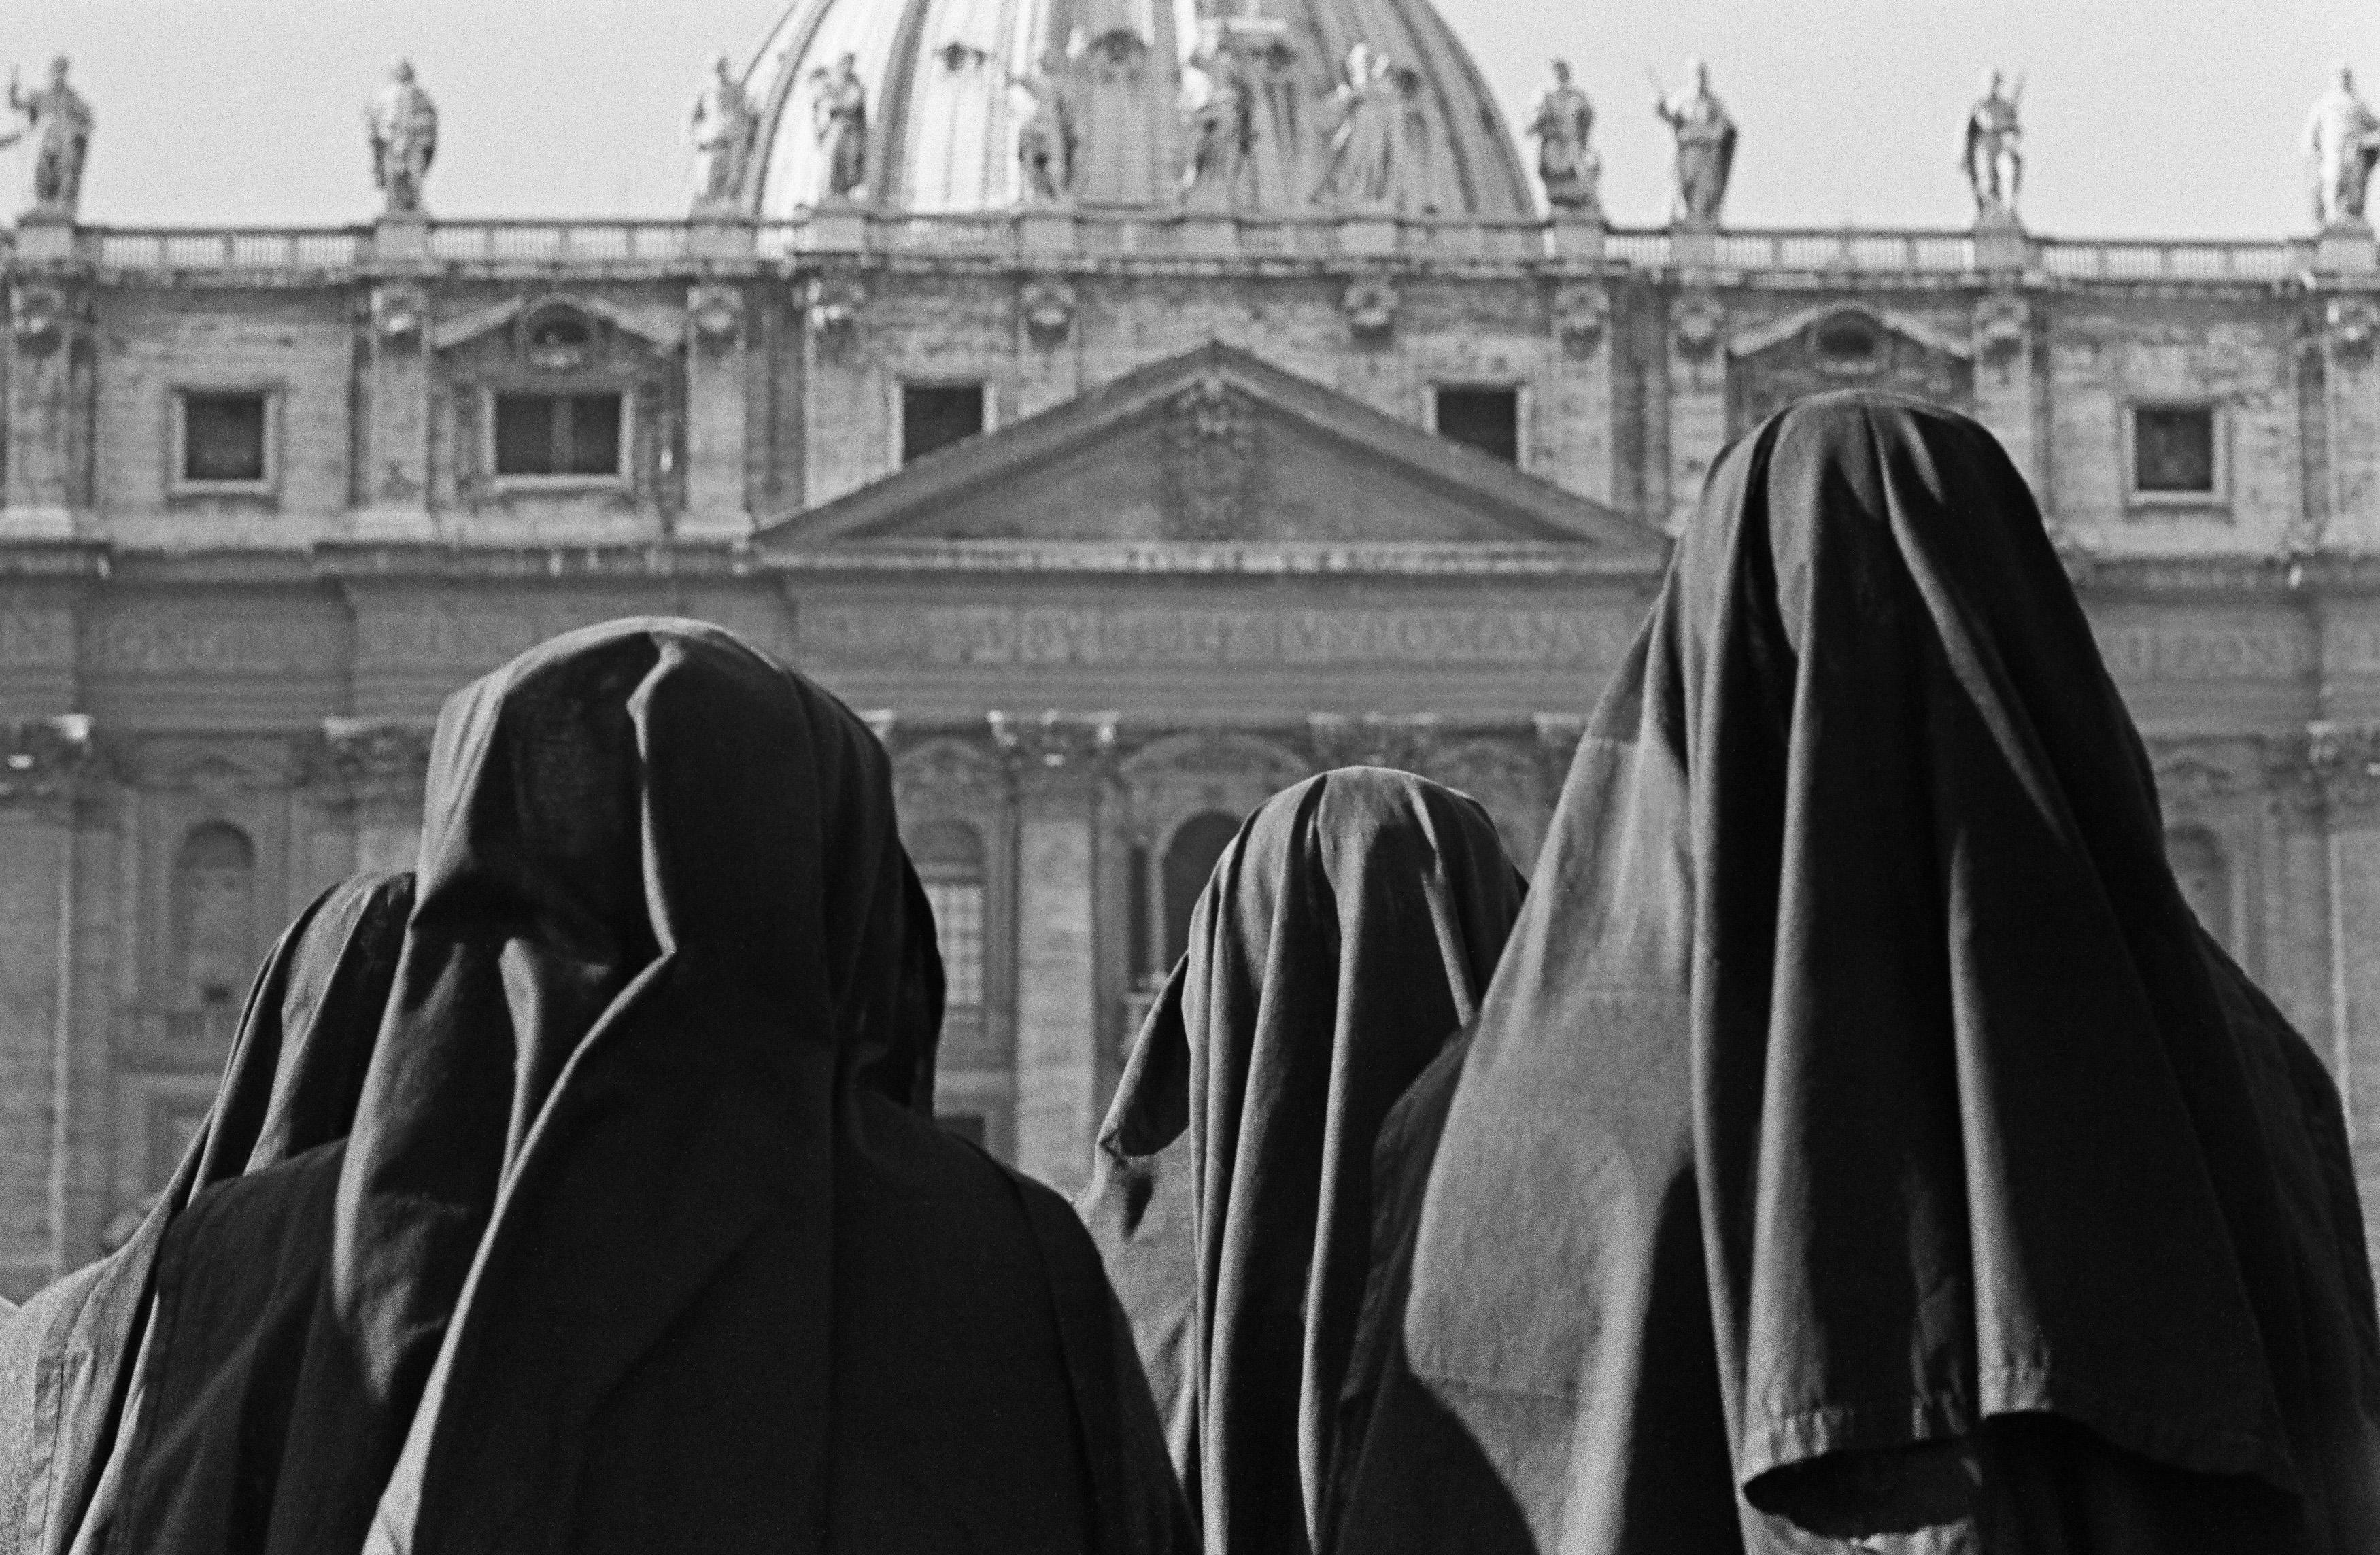 Fabrizio La Torre Black and White Photograph - Un religioso ascolto, 1965 - Roma - Contemporary Black & White Photography